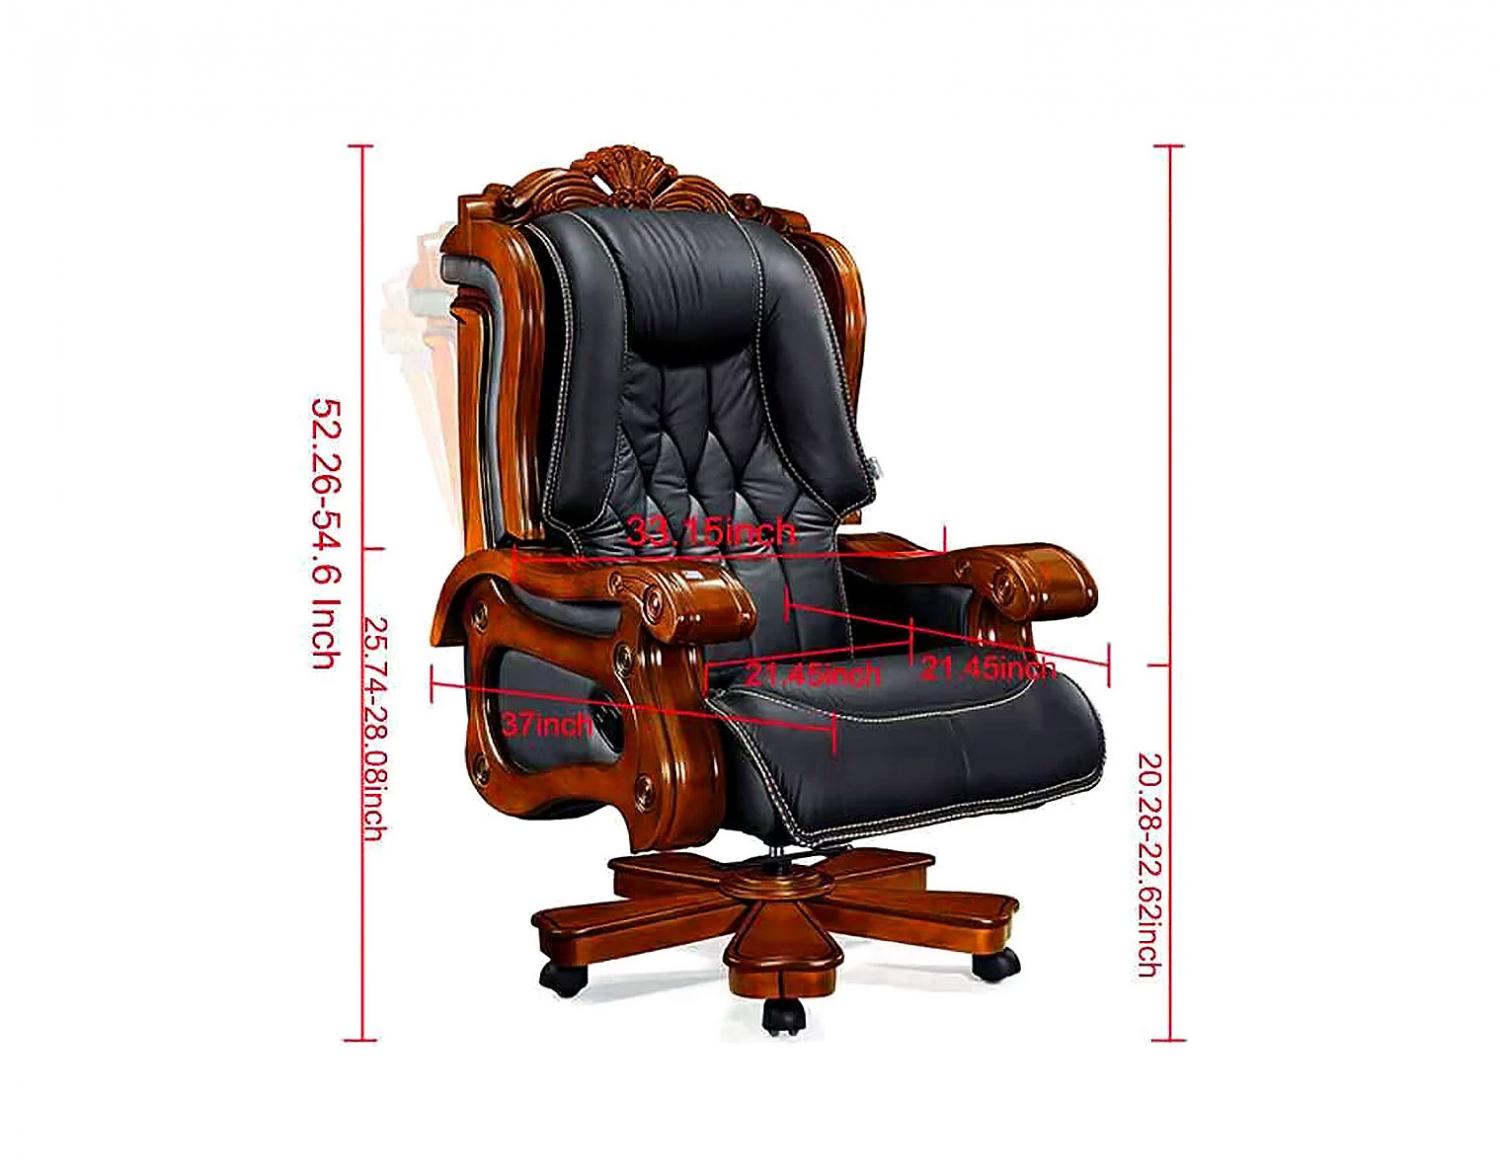 Black leather dark brown wooden chair